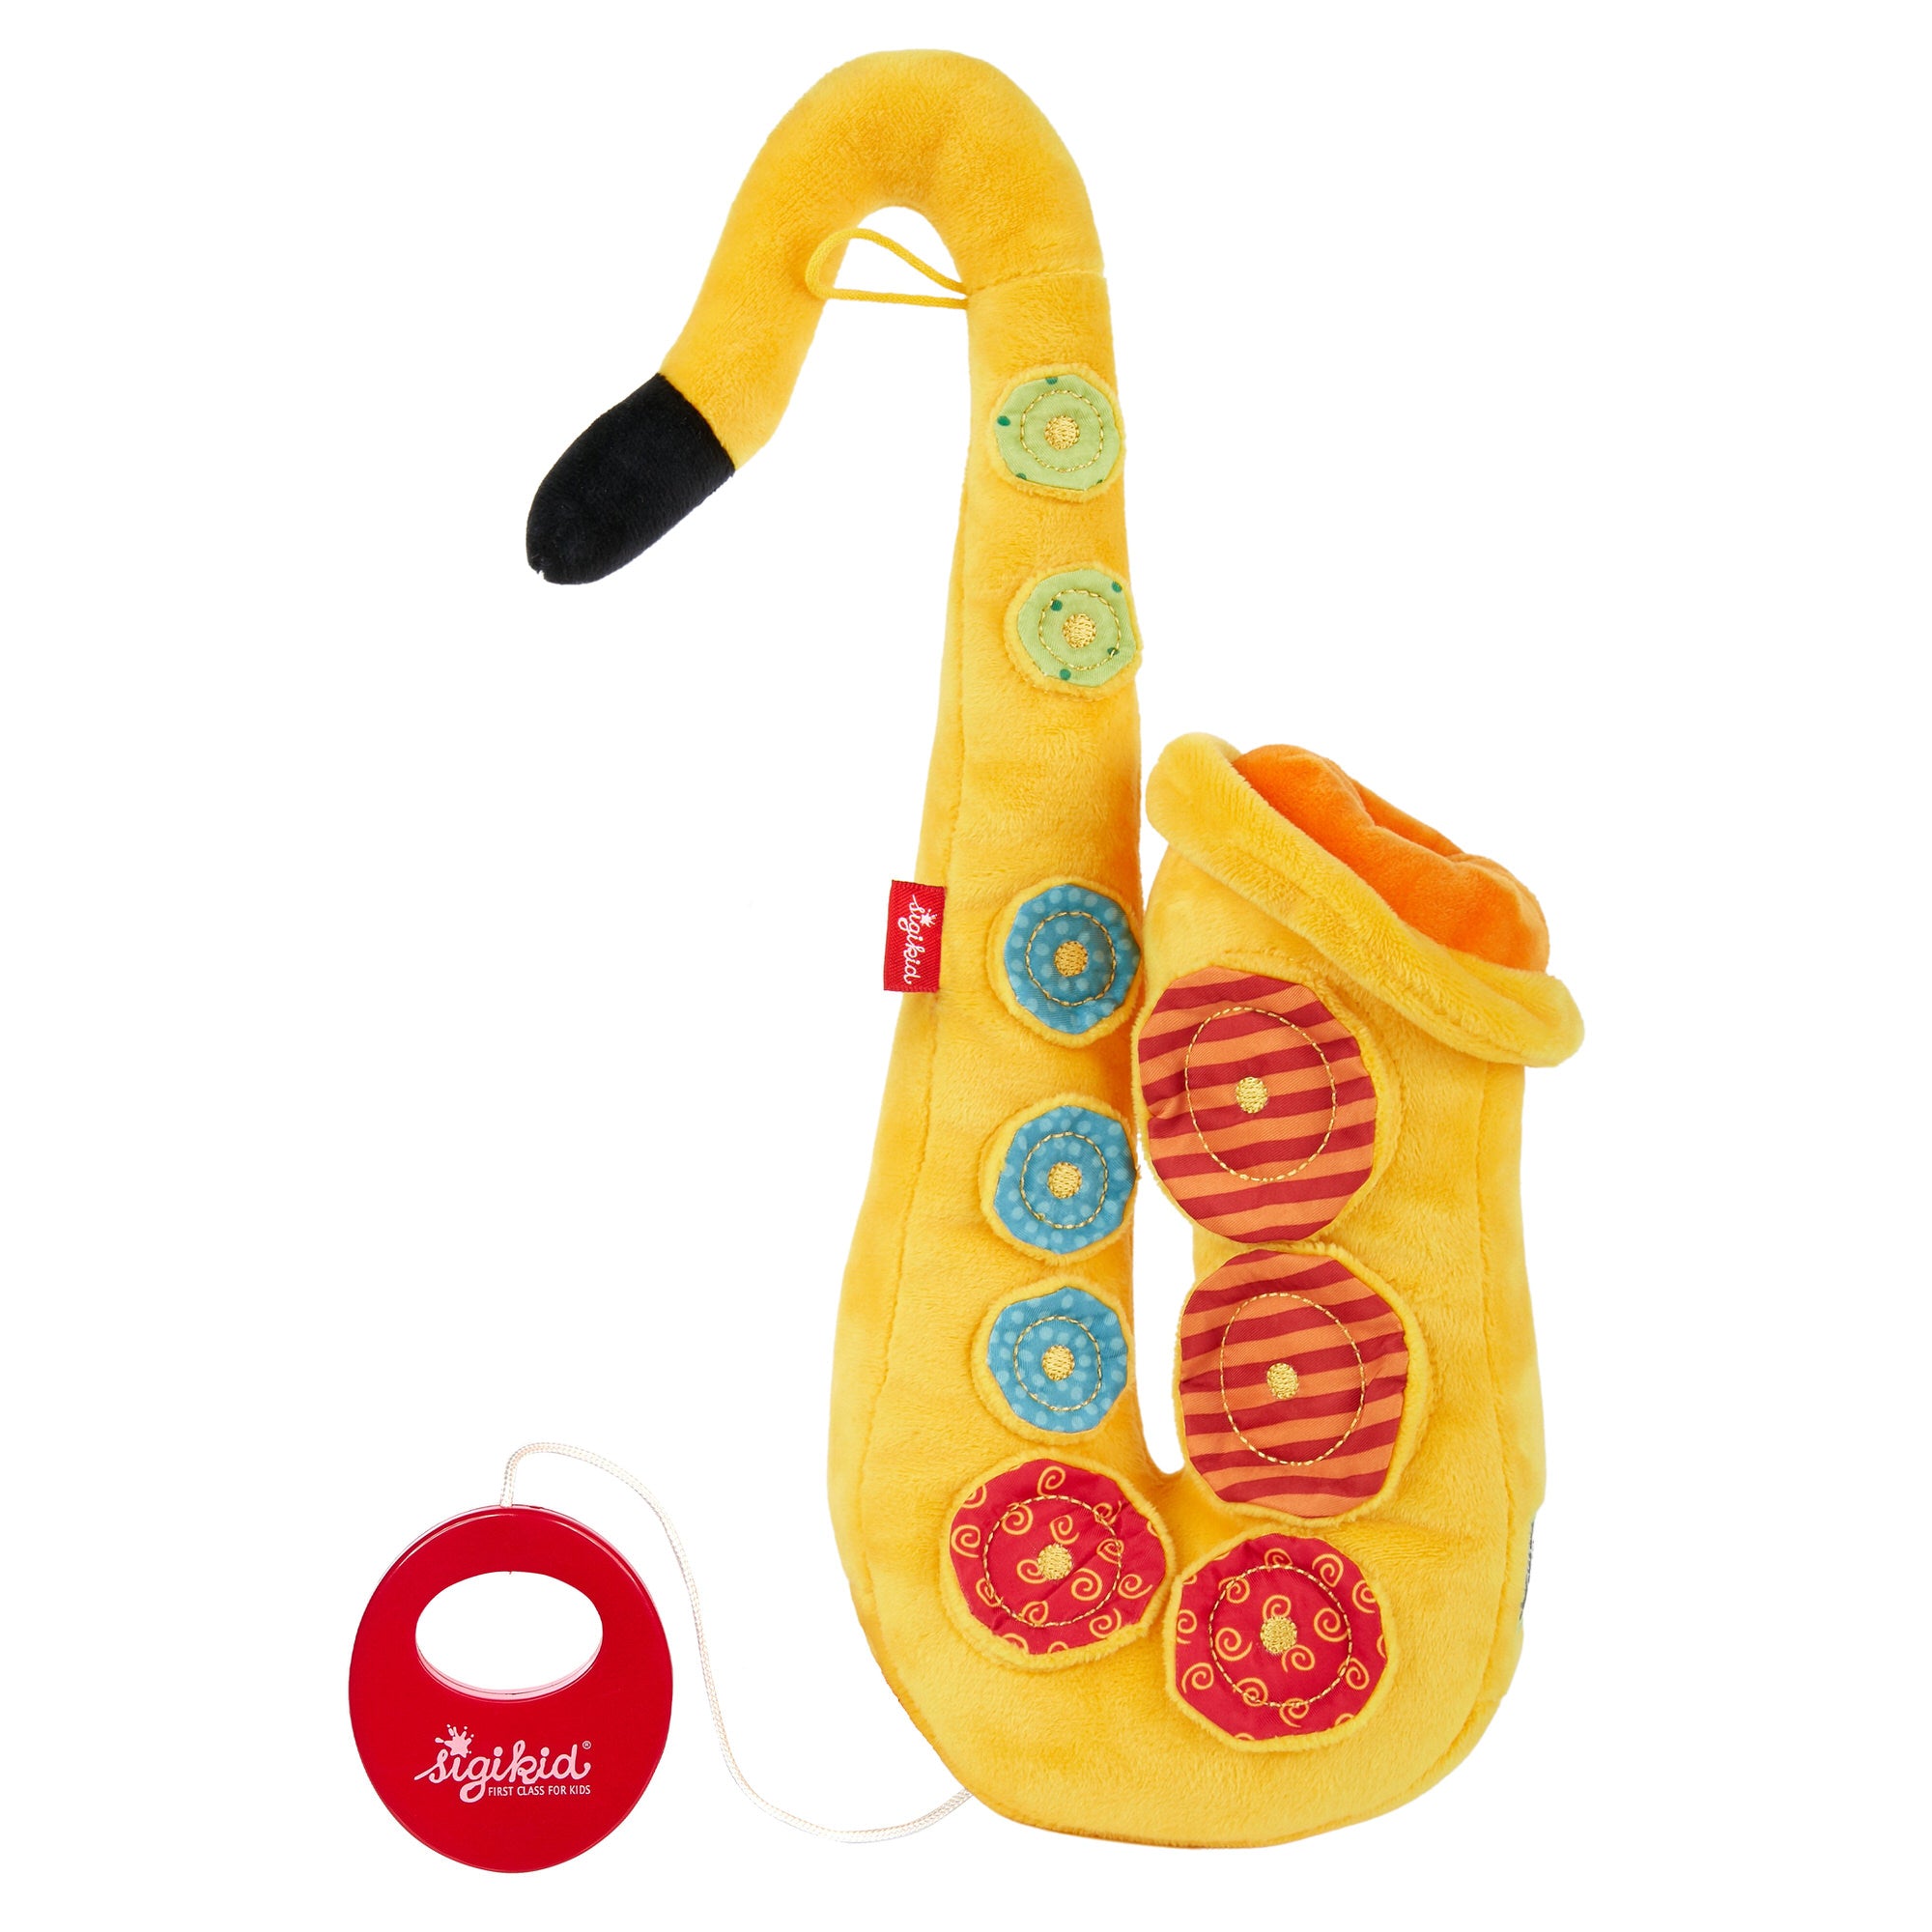 Kids Educational Toys Mini Saxophone Mini Stuff That Actually